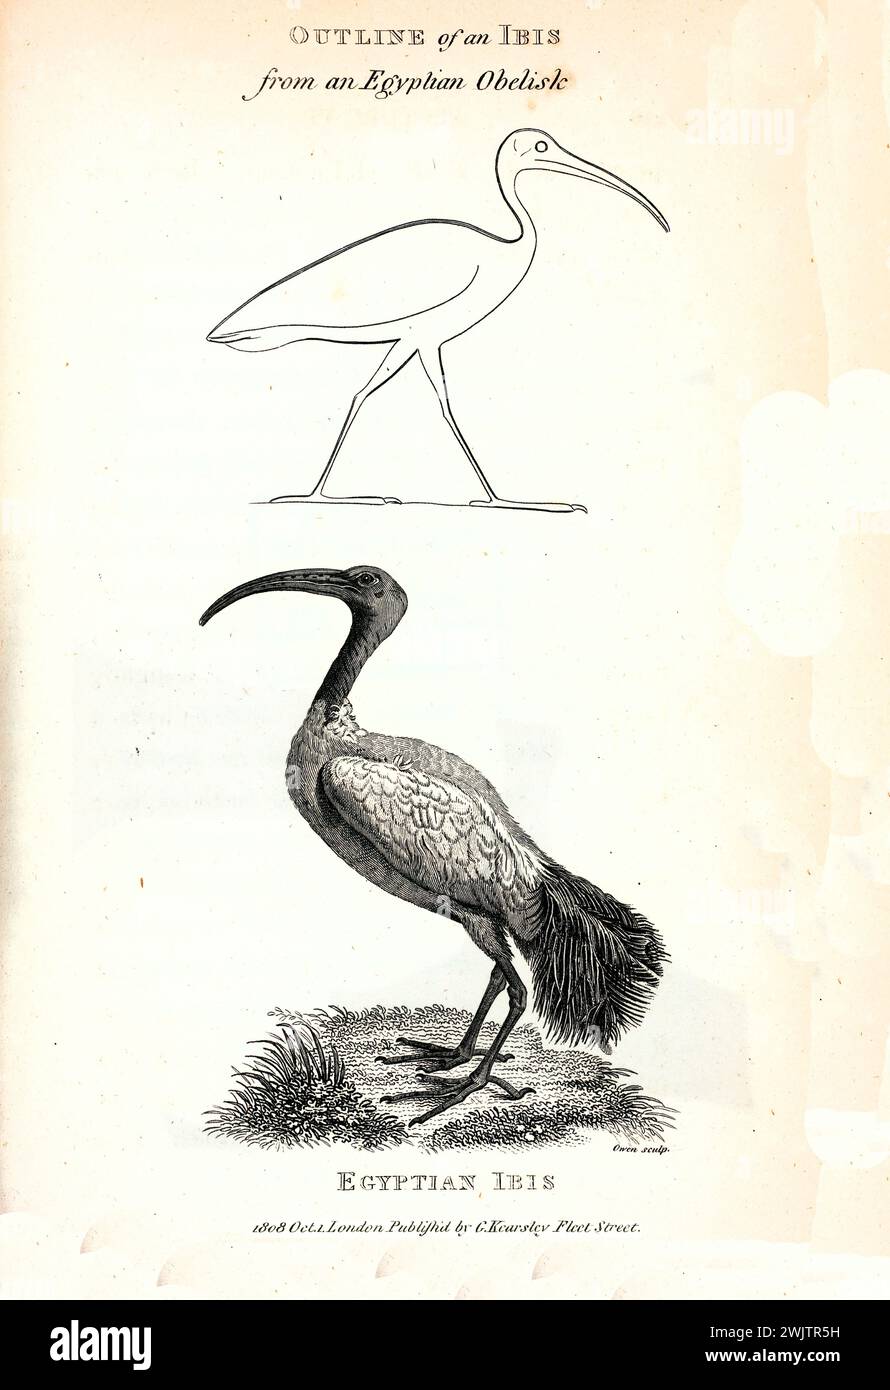 Vecchia illustrazione incisa dell'Ibis egiziano. Creato da George Shaw, pubblicato su Zoological Lectures, Londra, 1809 Foto Stock